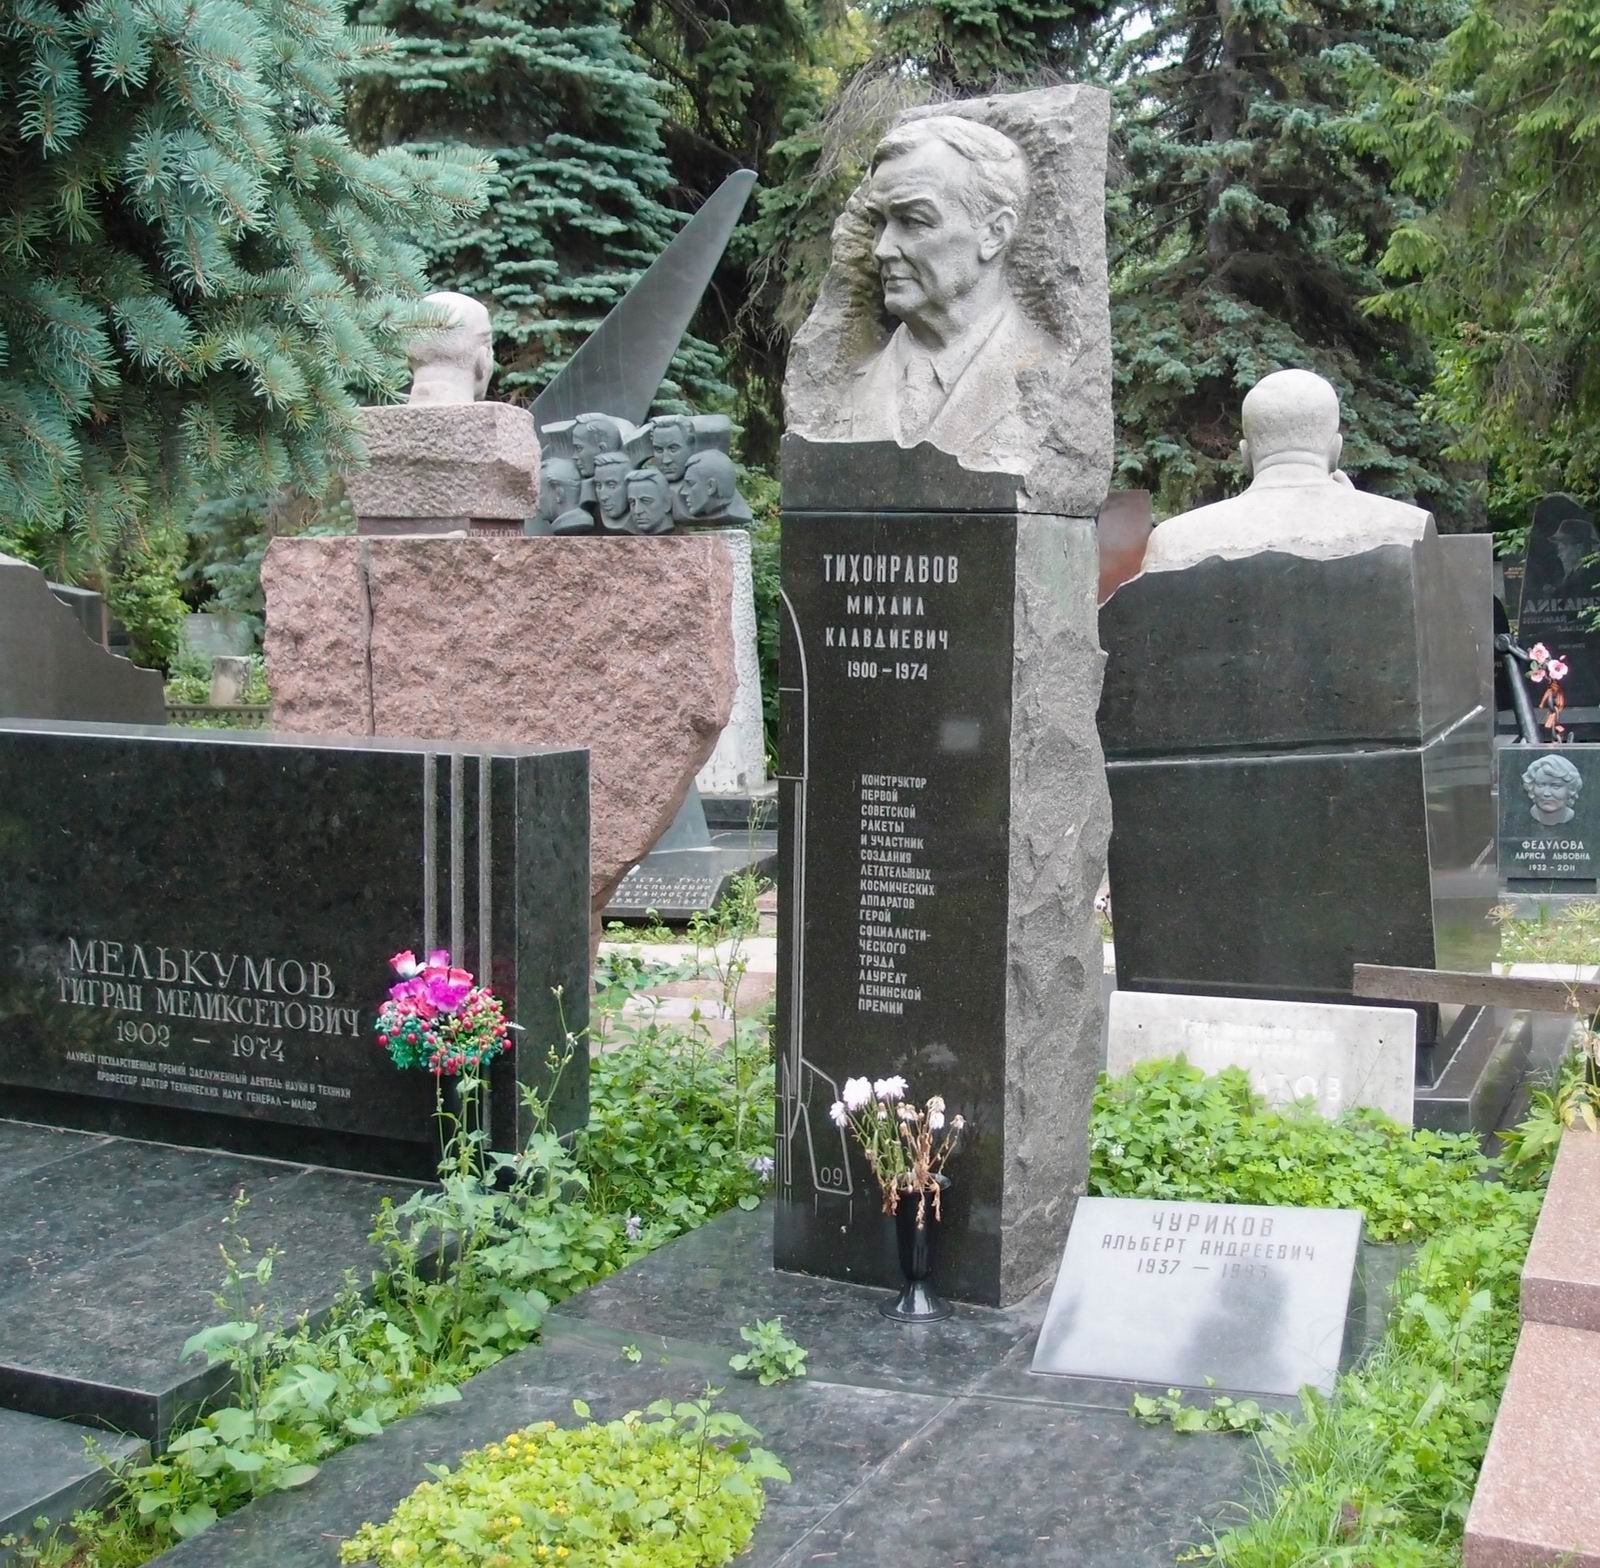 Памятник на могиле Тихонравова М.К. (1900-1974), ск. С.Пилипер, арх. Л.Маковский, на Новодевичьем кладбище (7-8-16).